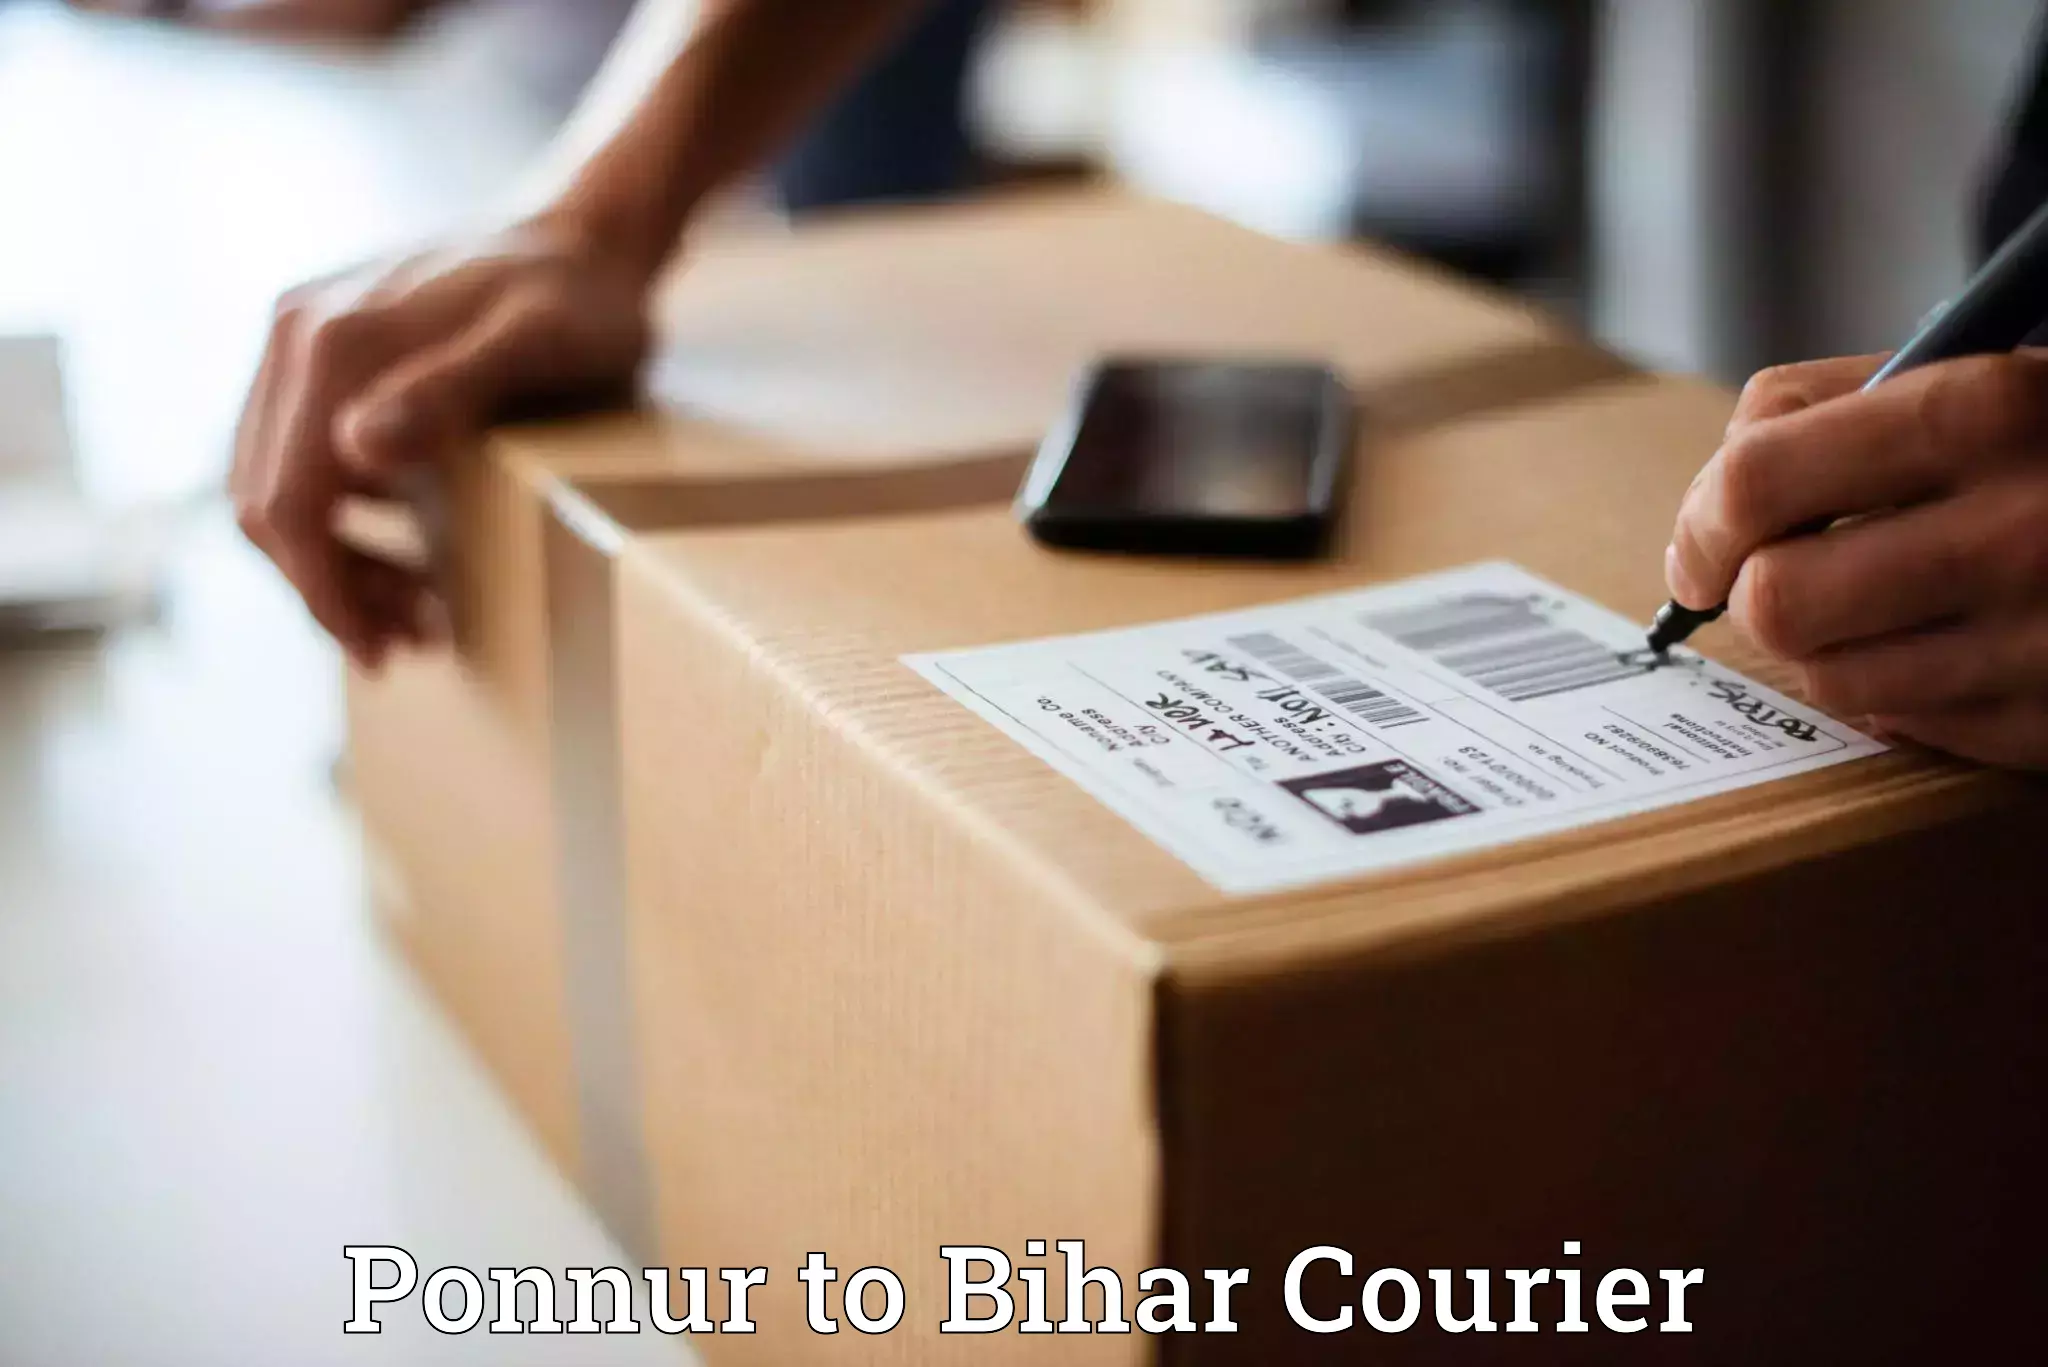 Affordable parcel service Ponnur to Aurangabad Bihar